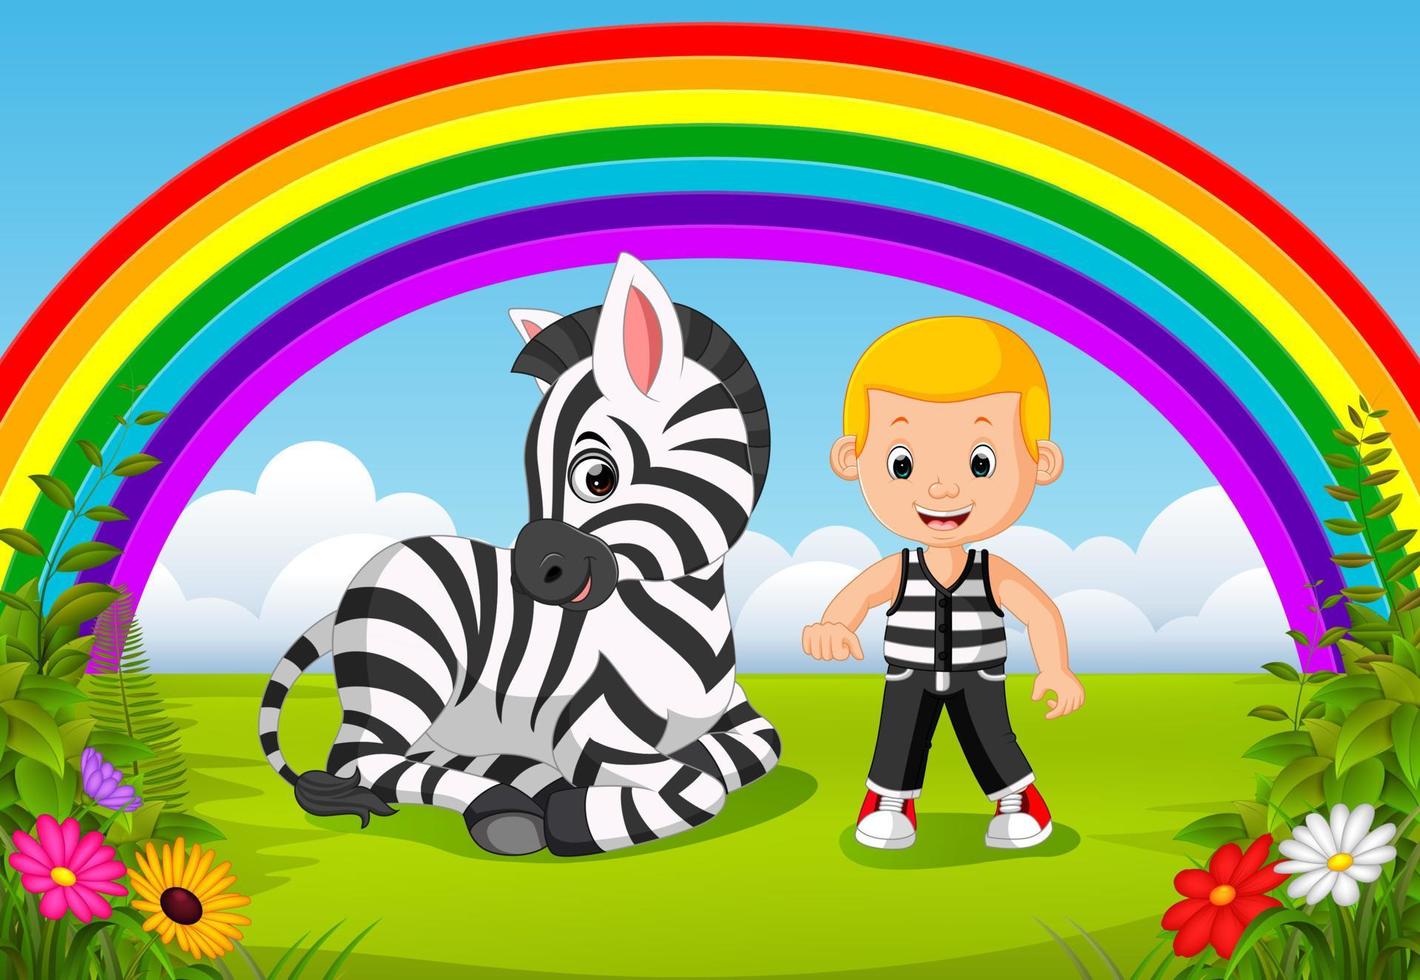 süßer junge und zebra im park mit regenbogenszene vektor